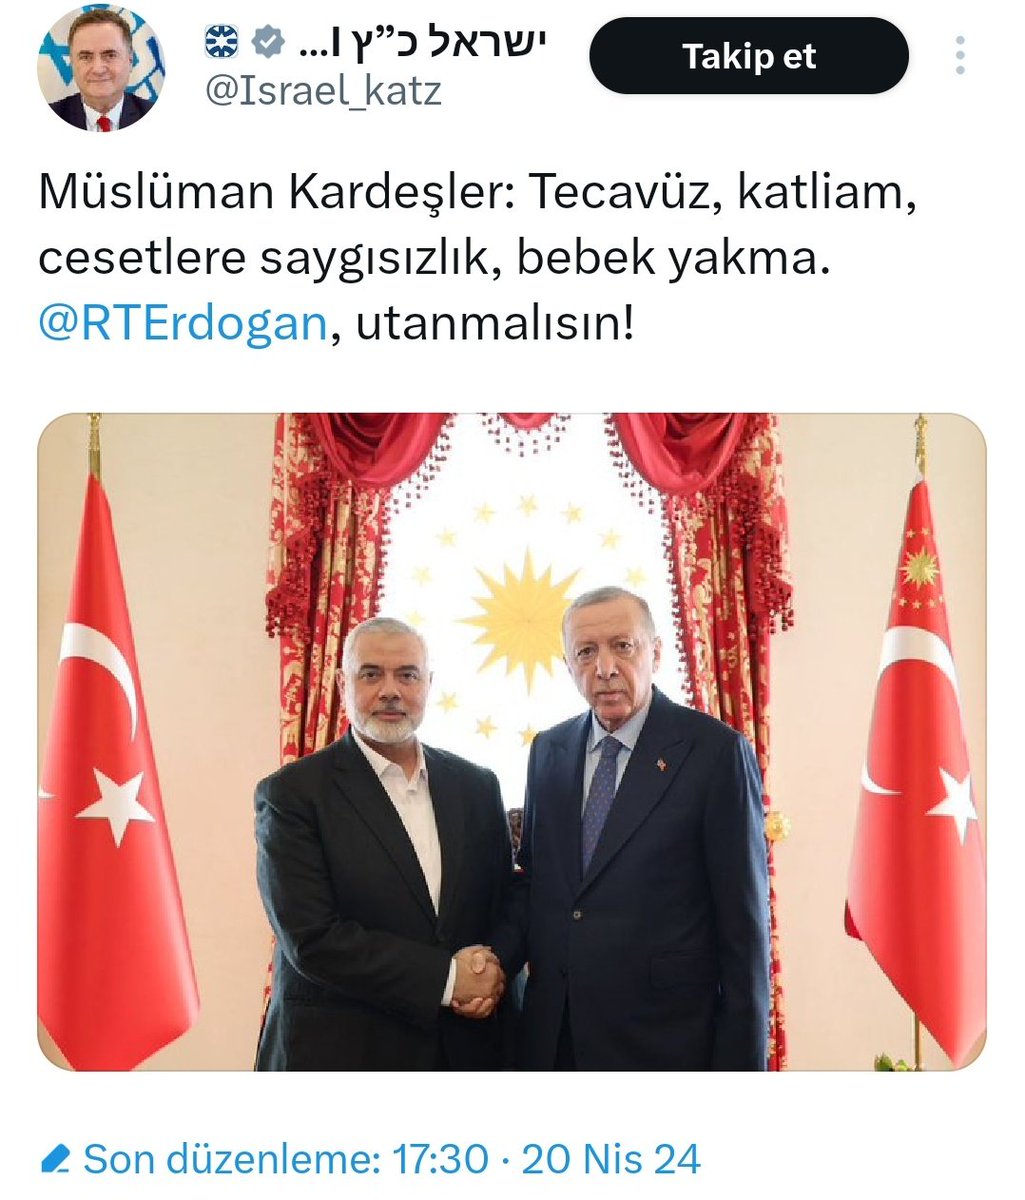 Cumhuriyet Gazetesi ile İsrail'i Bakanın Paylaşımın Arasında Bir Fark var mı 🤔 İkisi de Siyonist 😏👇 #MEXC #fahisyemeğeBOYKOT Recep Tayyip Erdoğan Mehmet Şimşek